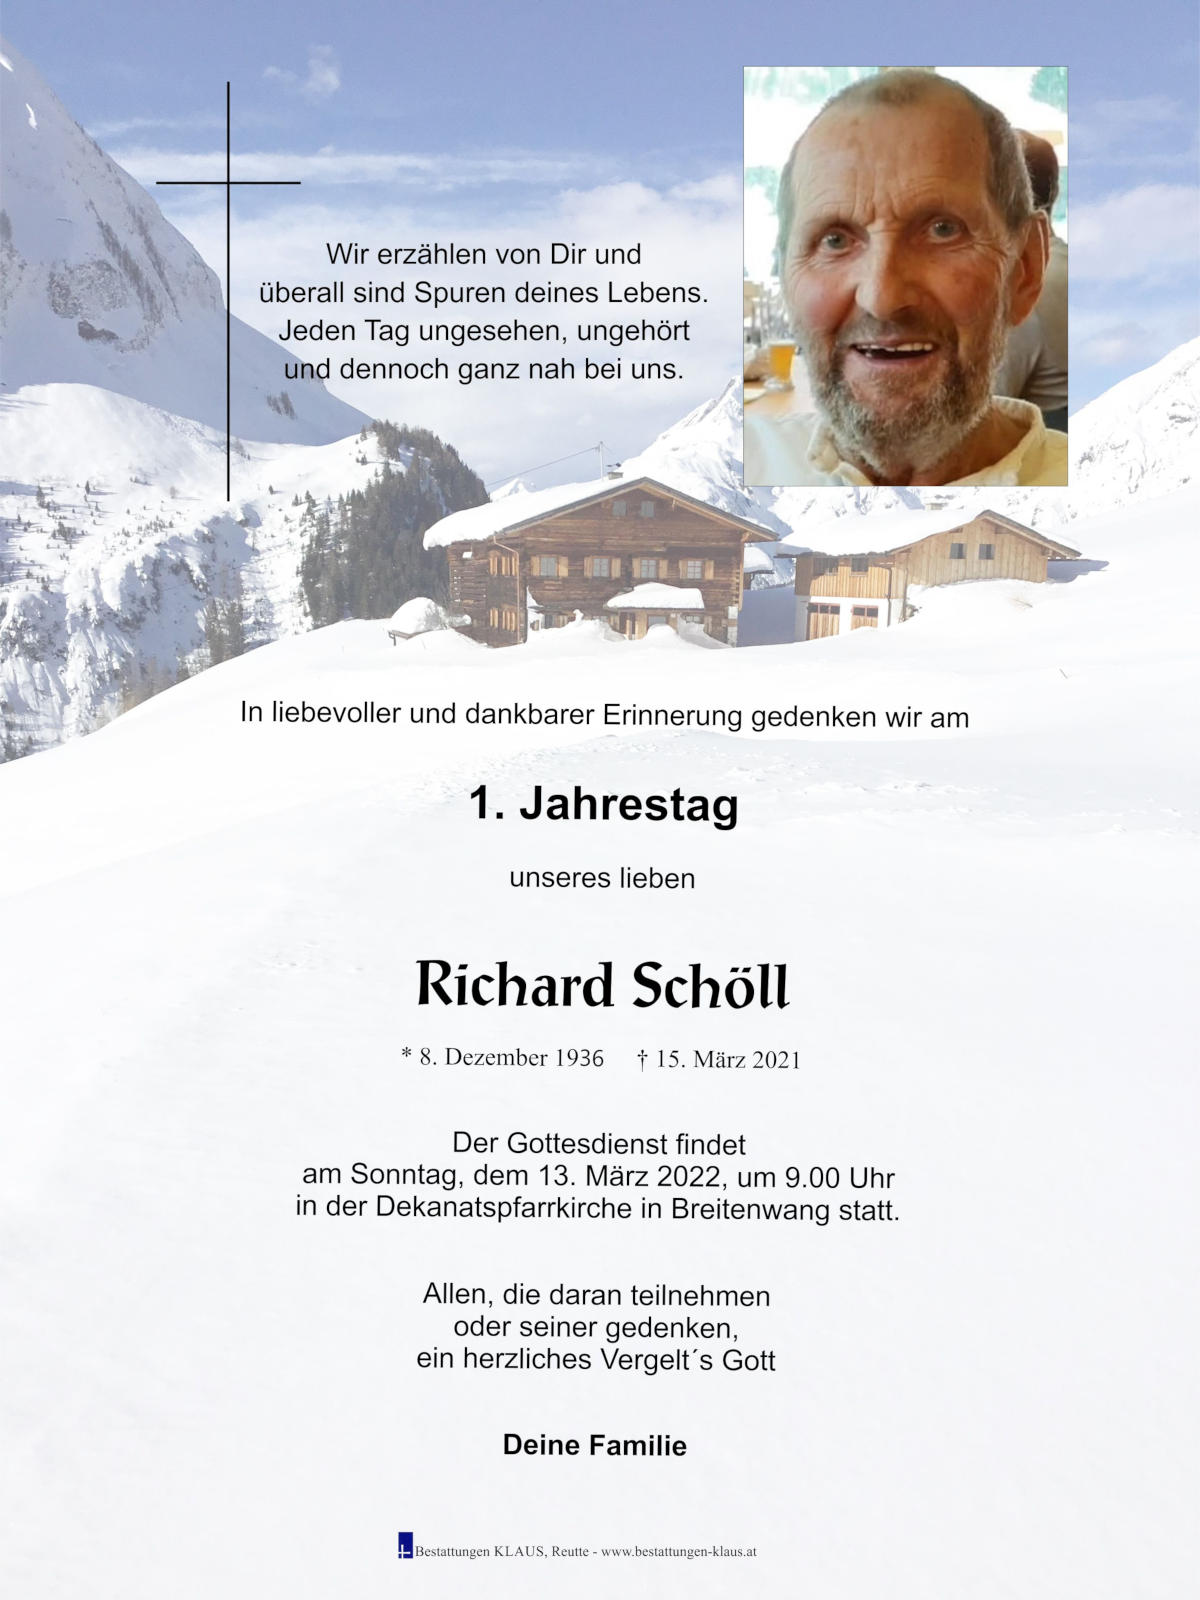 Richard Schöll, 13.03.2022 um 9.00 Uhr in der Dekanatspfarrkirche in Breitenwang statt